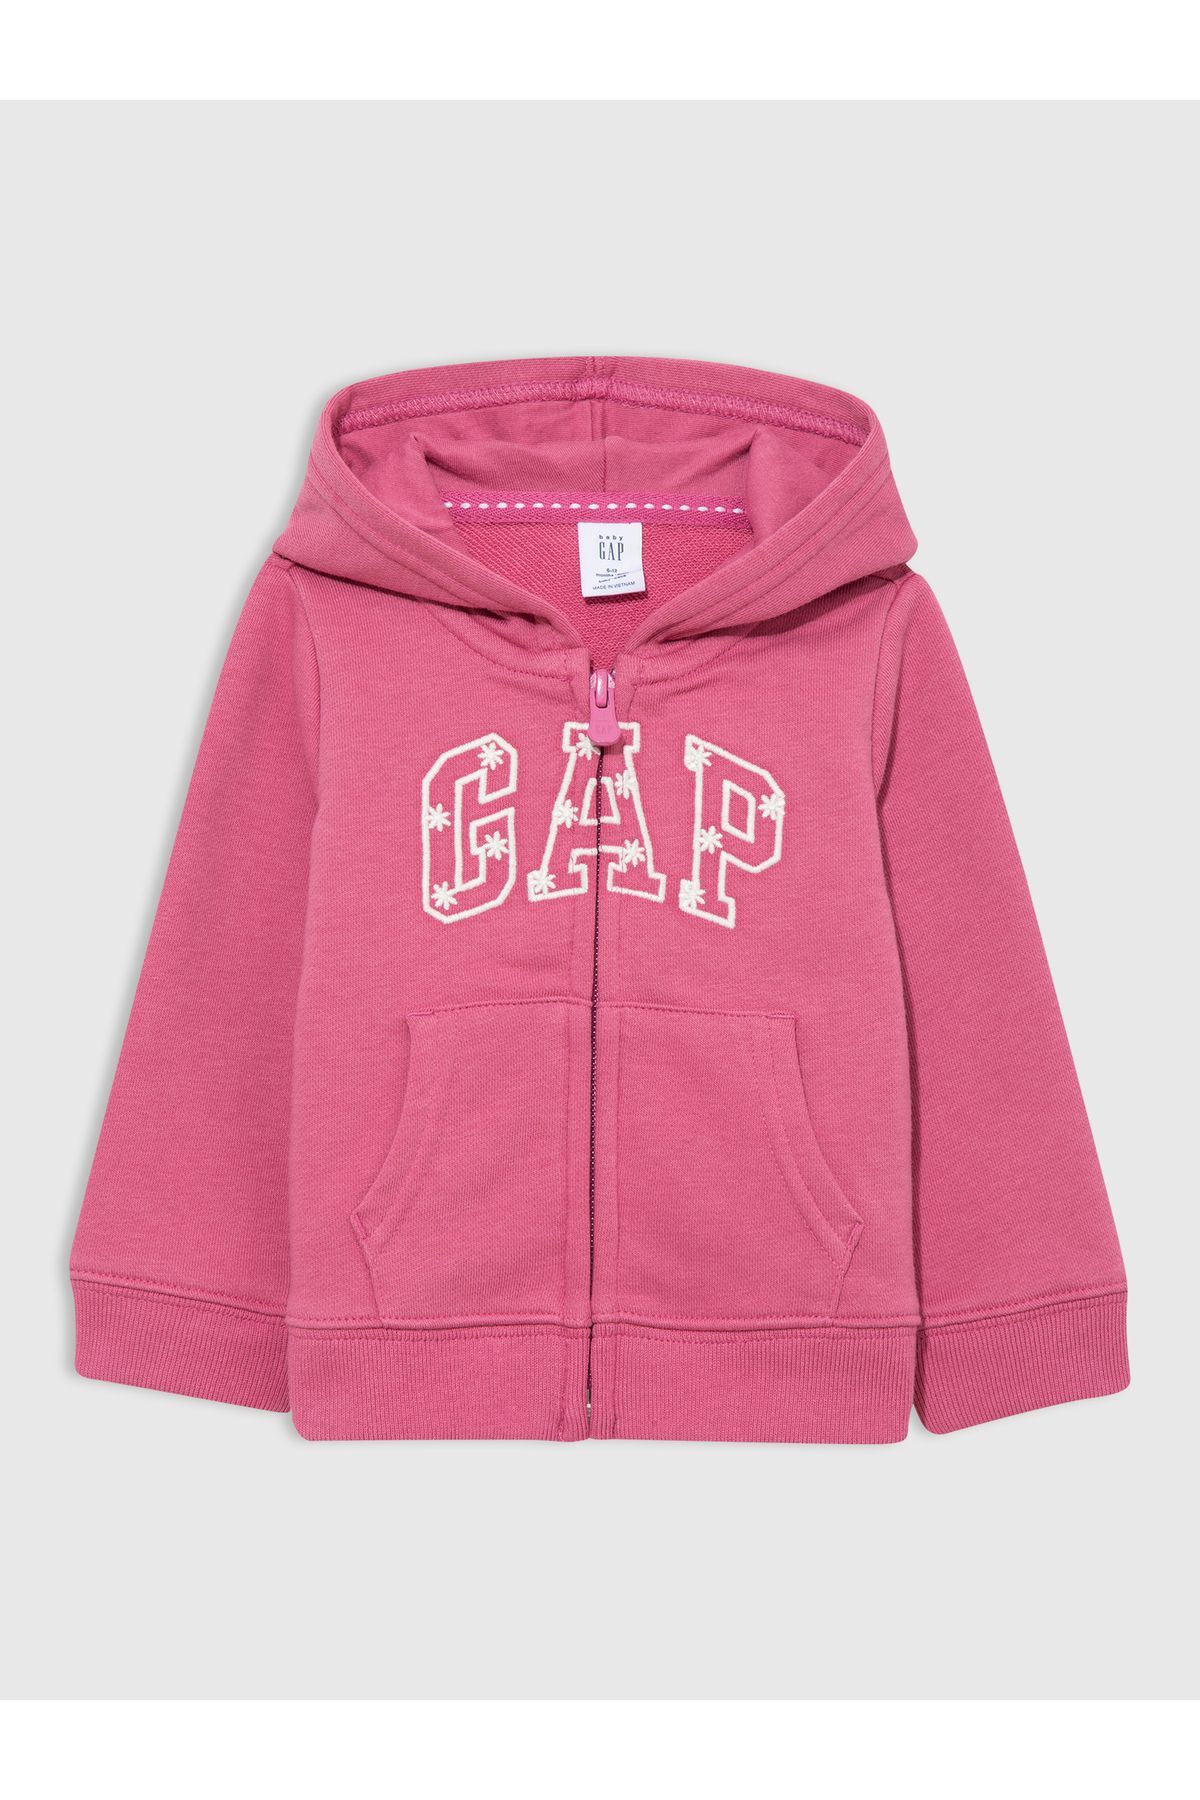 GAP Kız Bebek Koyu Pembe Gap Logo Fermuarlı Fransız Havlu Kumaş Sweatshirt